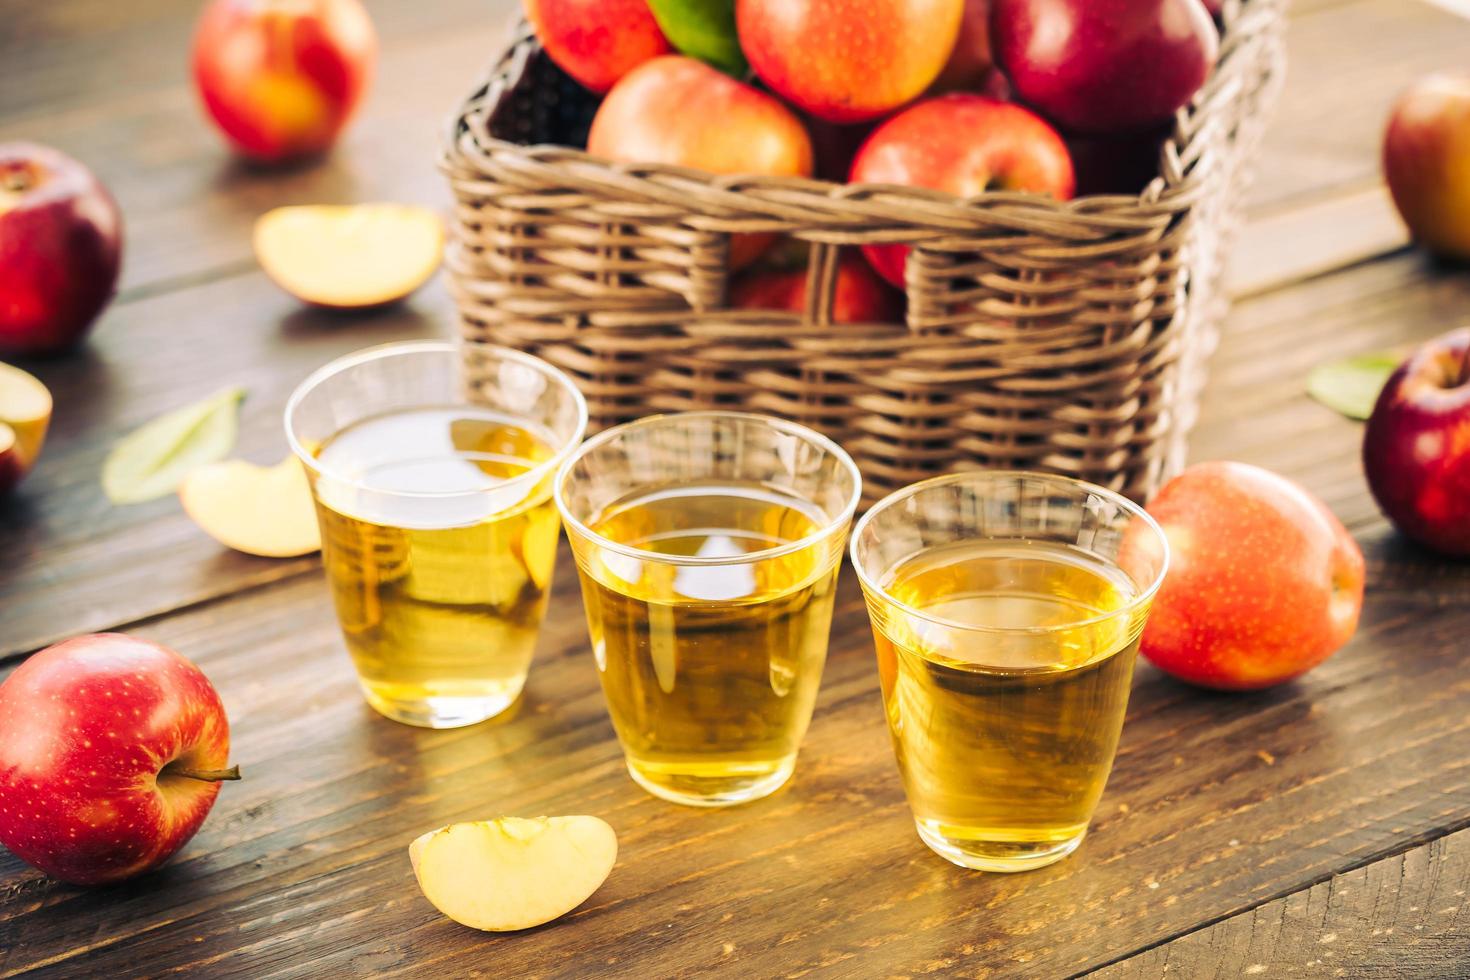 äppeljuice i glas och äpplen i korgen foto